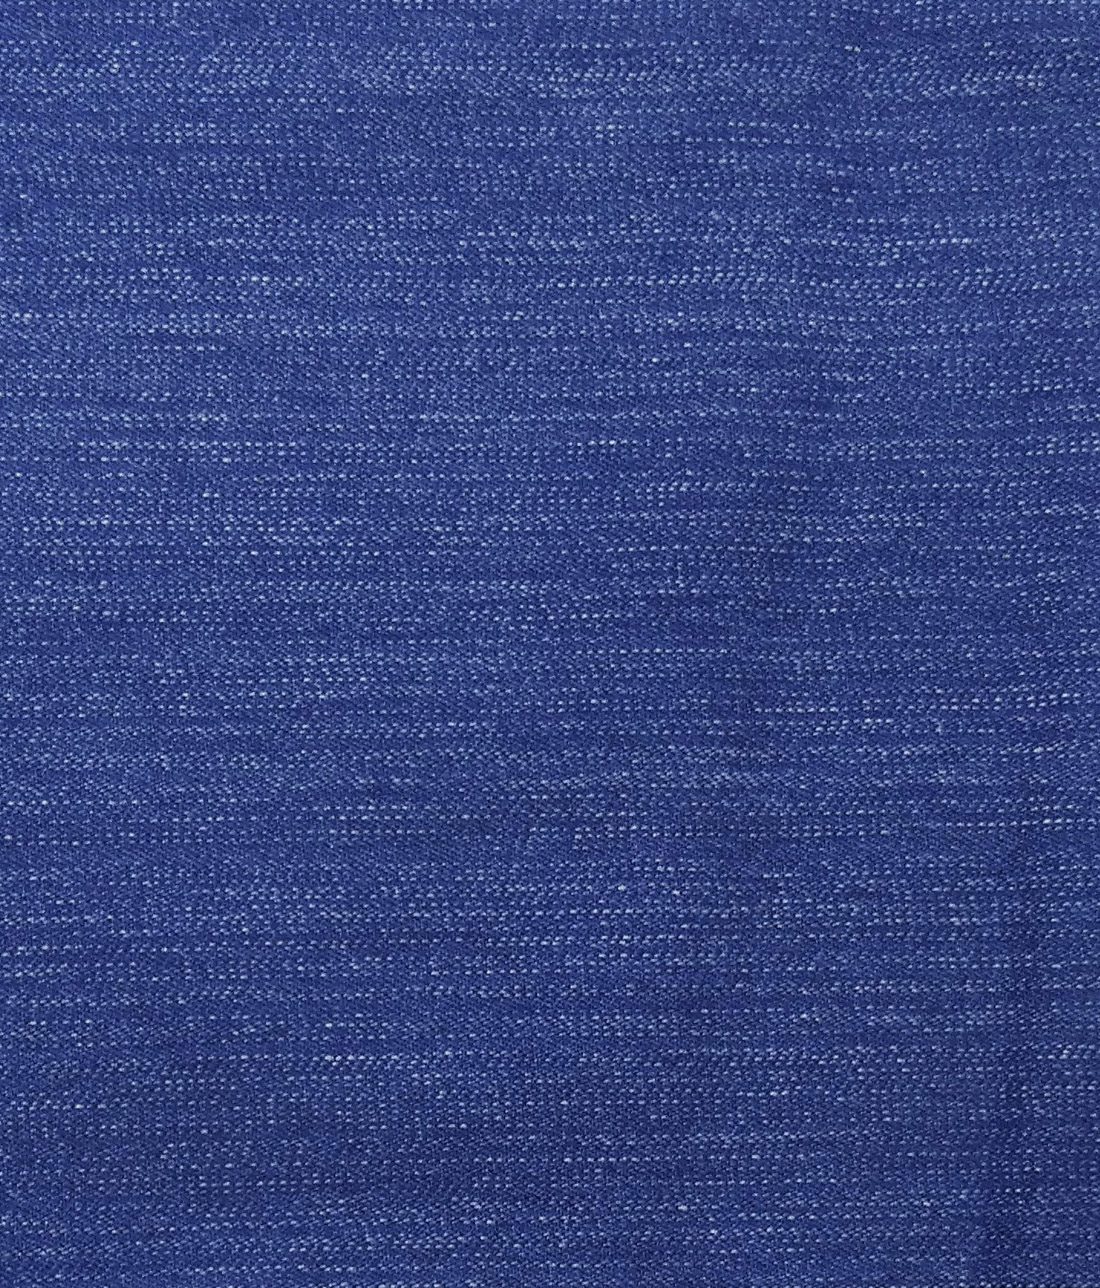 Buy Blue Shirt Pieces for Men by Bigreams.com Online | Ajio.com